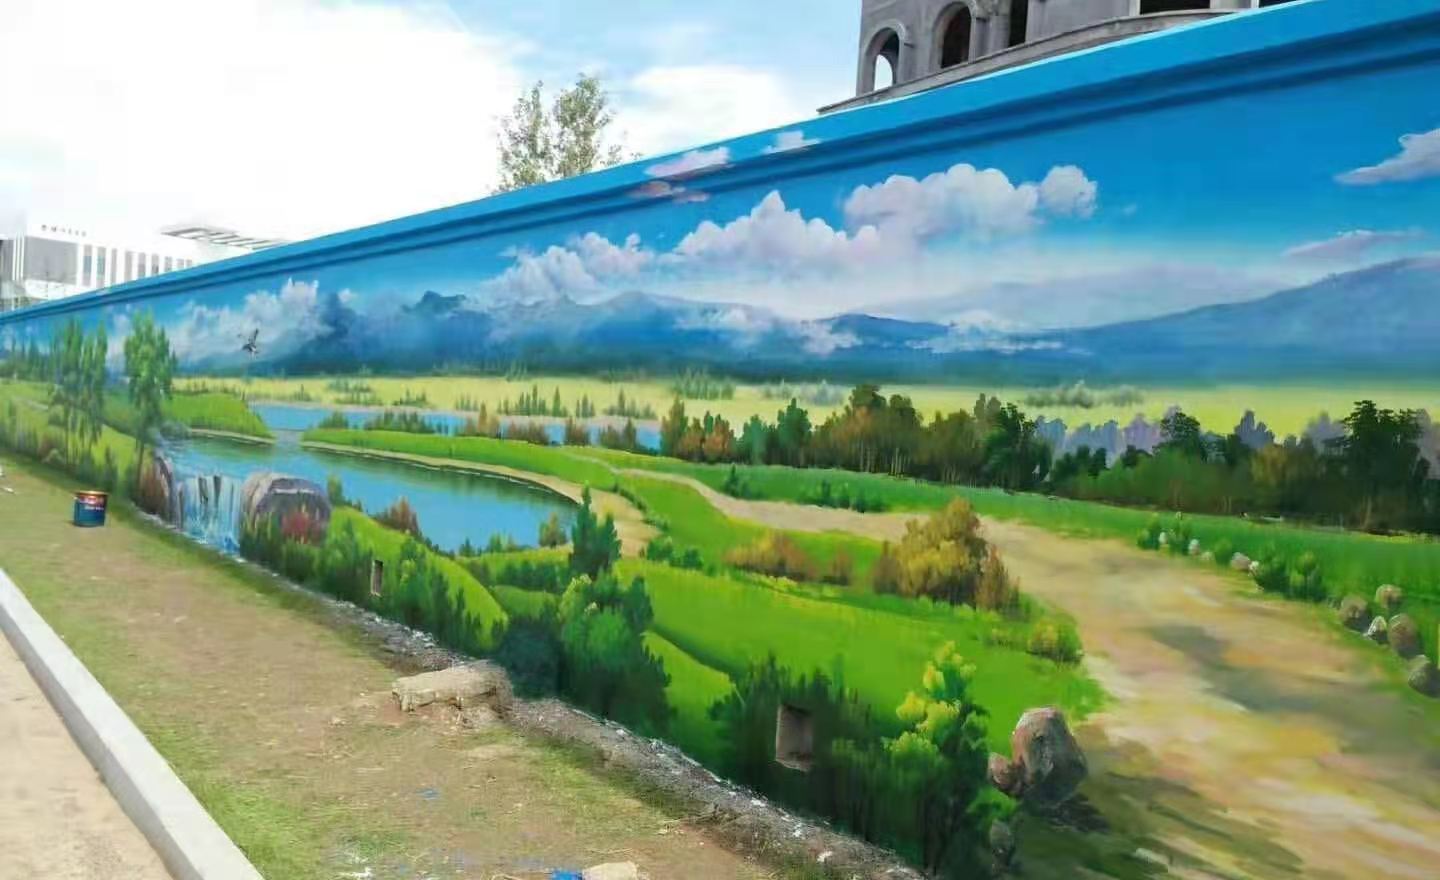 长垣县文明古城文化浓郁，采用墙体彩绘广告绘画出生动气息。